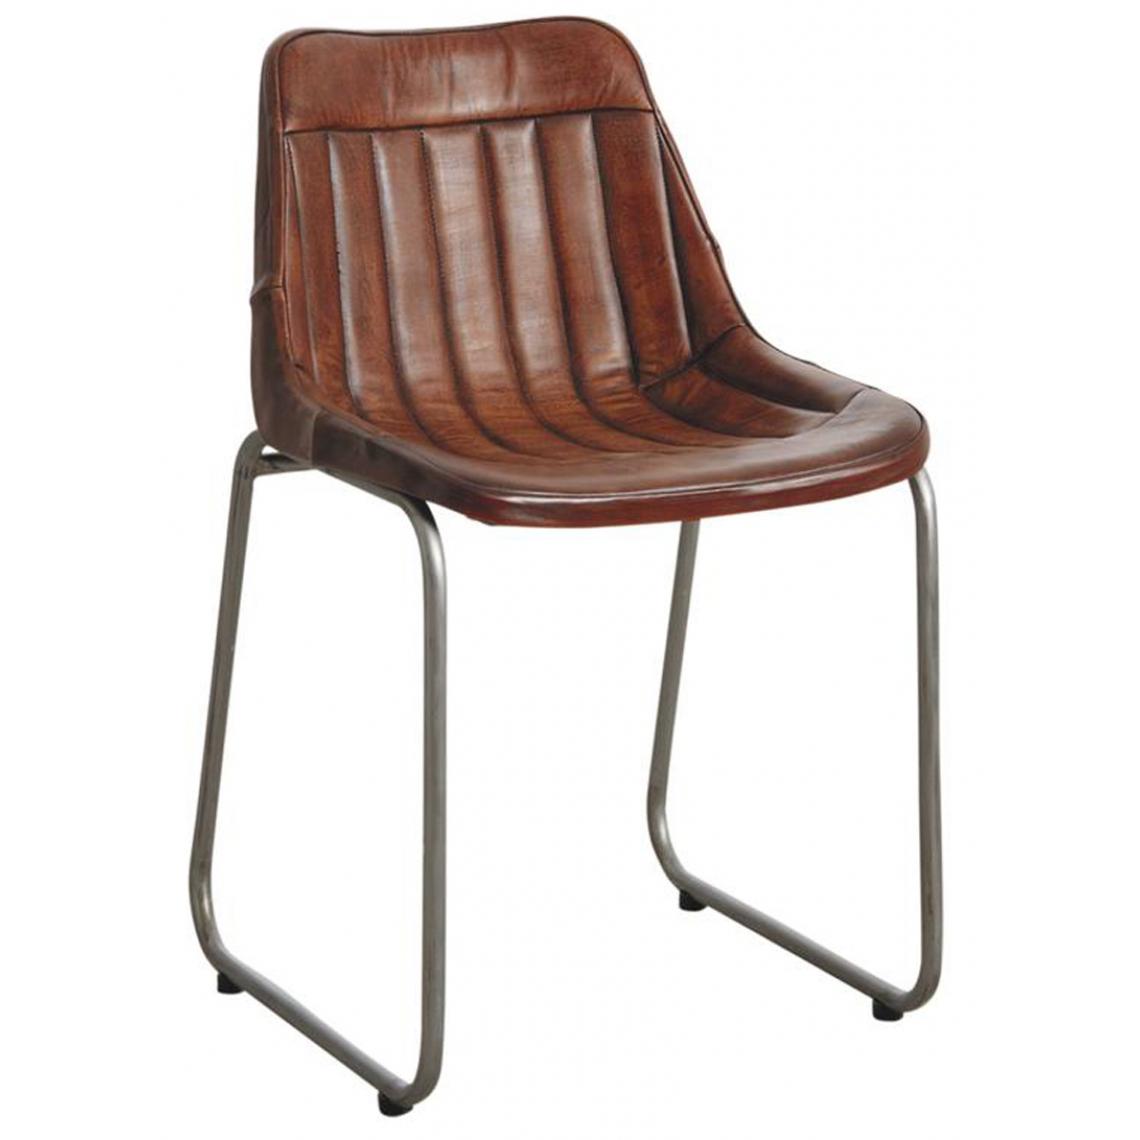 Pegane - Chaise en cuir avec pieds en métal - L 46 x P 52 x H 79 cm -PEGANE- - Chaises